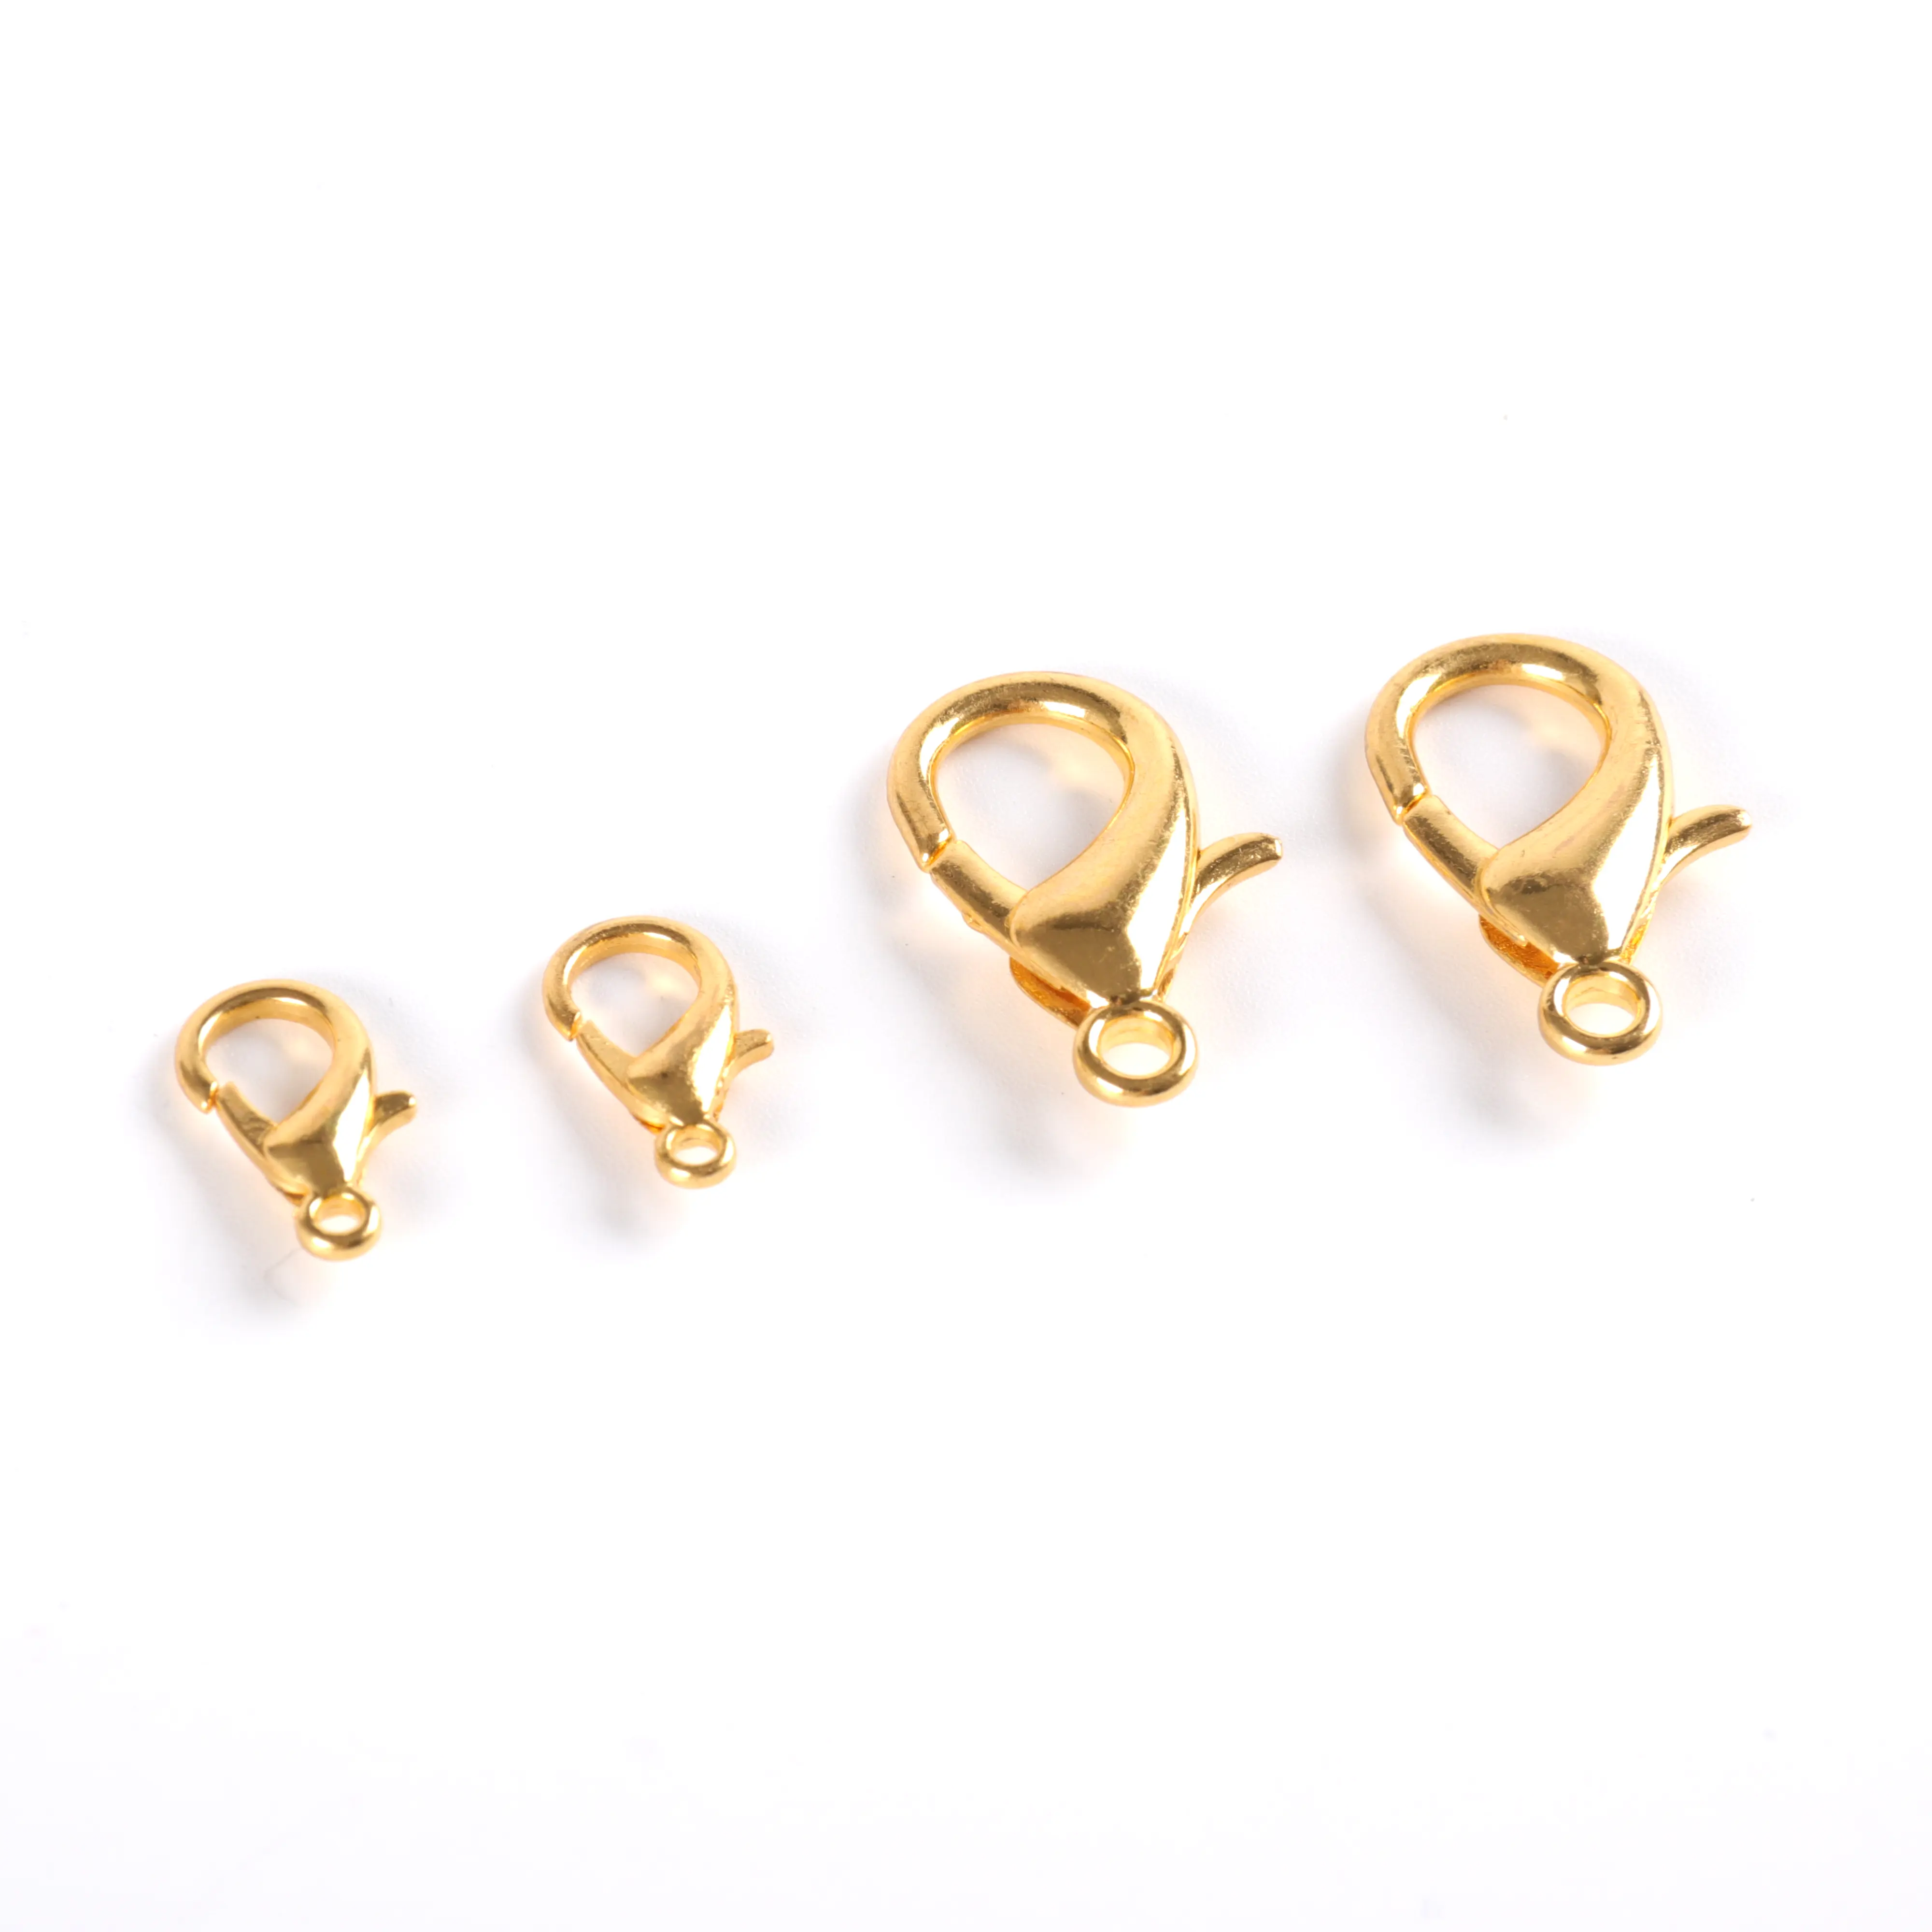 Manufaktur heiß Gold Silber Schlüssel bund Ring 30 mm Schlüssel ring lang 80 mm Karabiner verschluss Schlüssel haken Kette Für Spielzeug